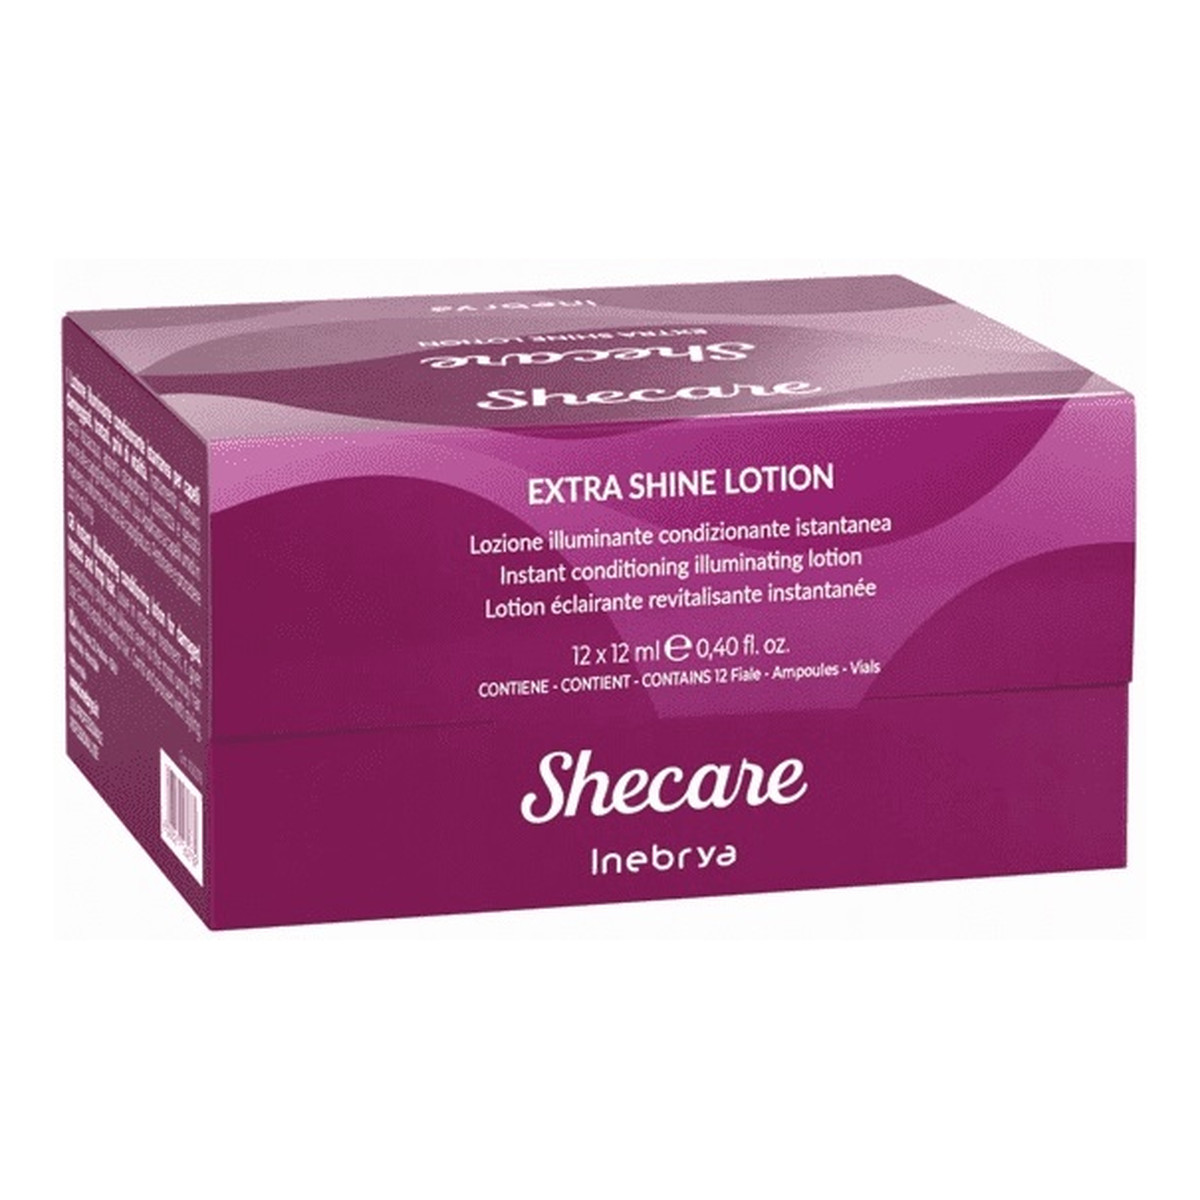 Inebrya Shecare extra shine lotion intensywna kuracja rozświetlająca do włosów zniszczonych zabiegami chemicznymi 12x 12ml